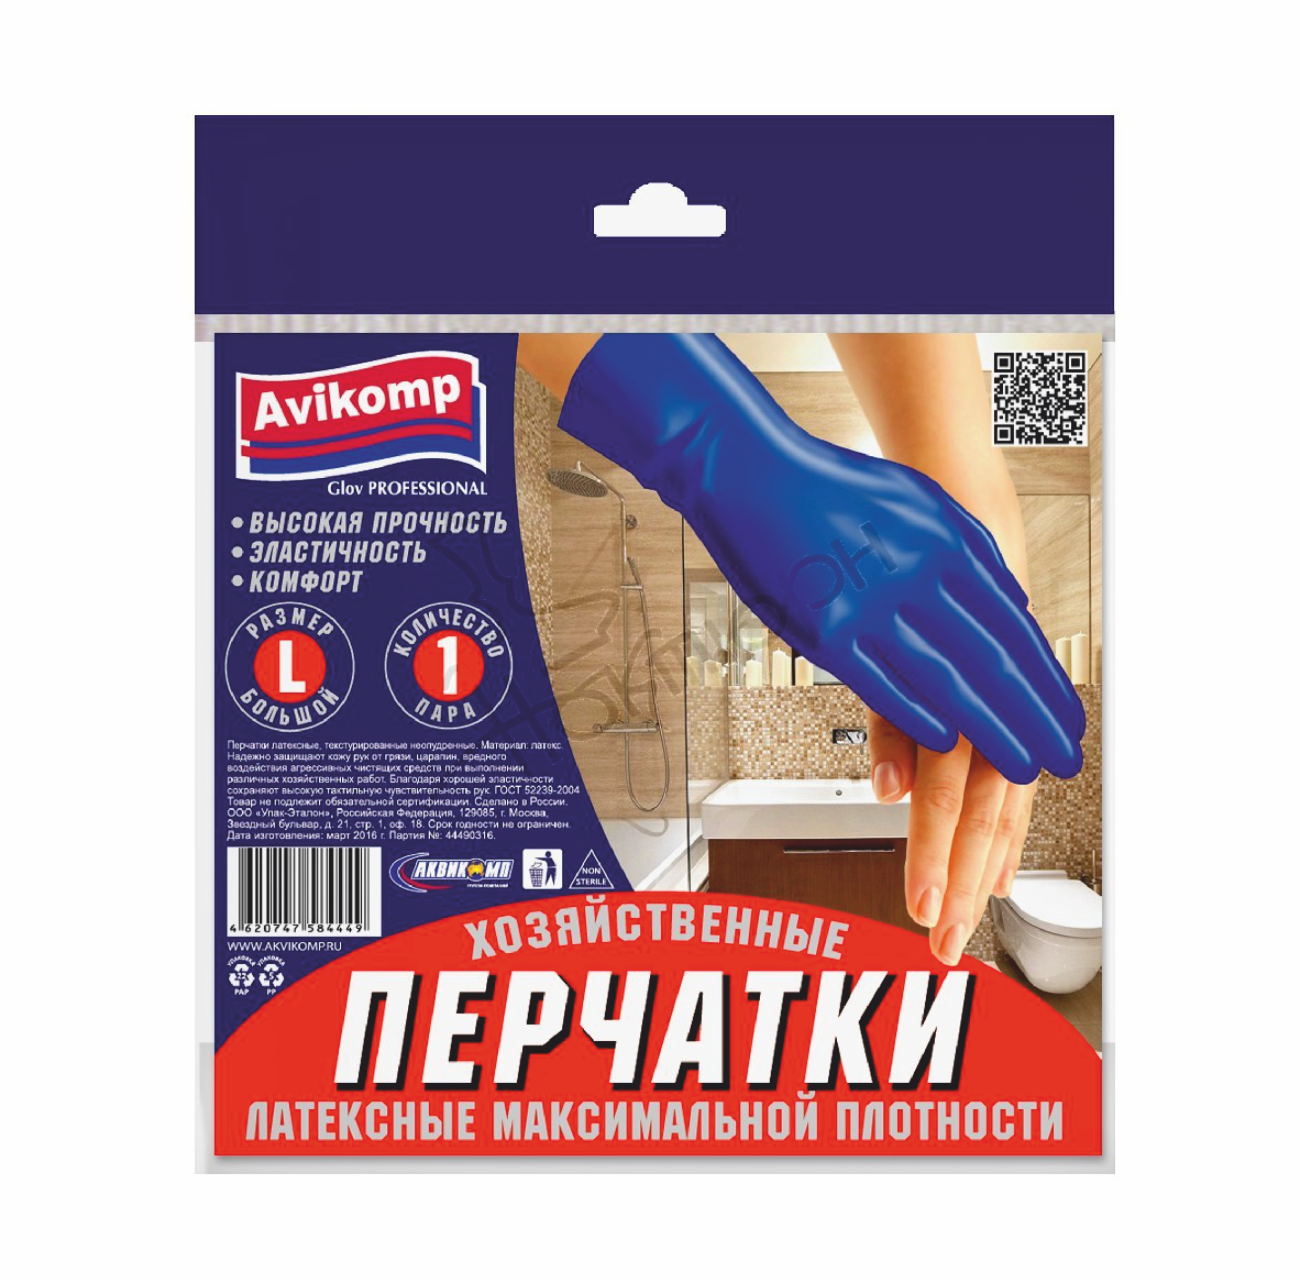 Перчатки хозяйственные латексные AVIKOMP Glov Professional